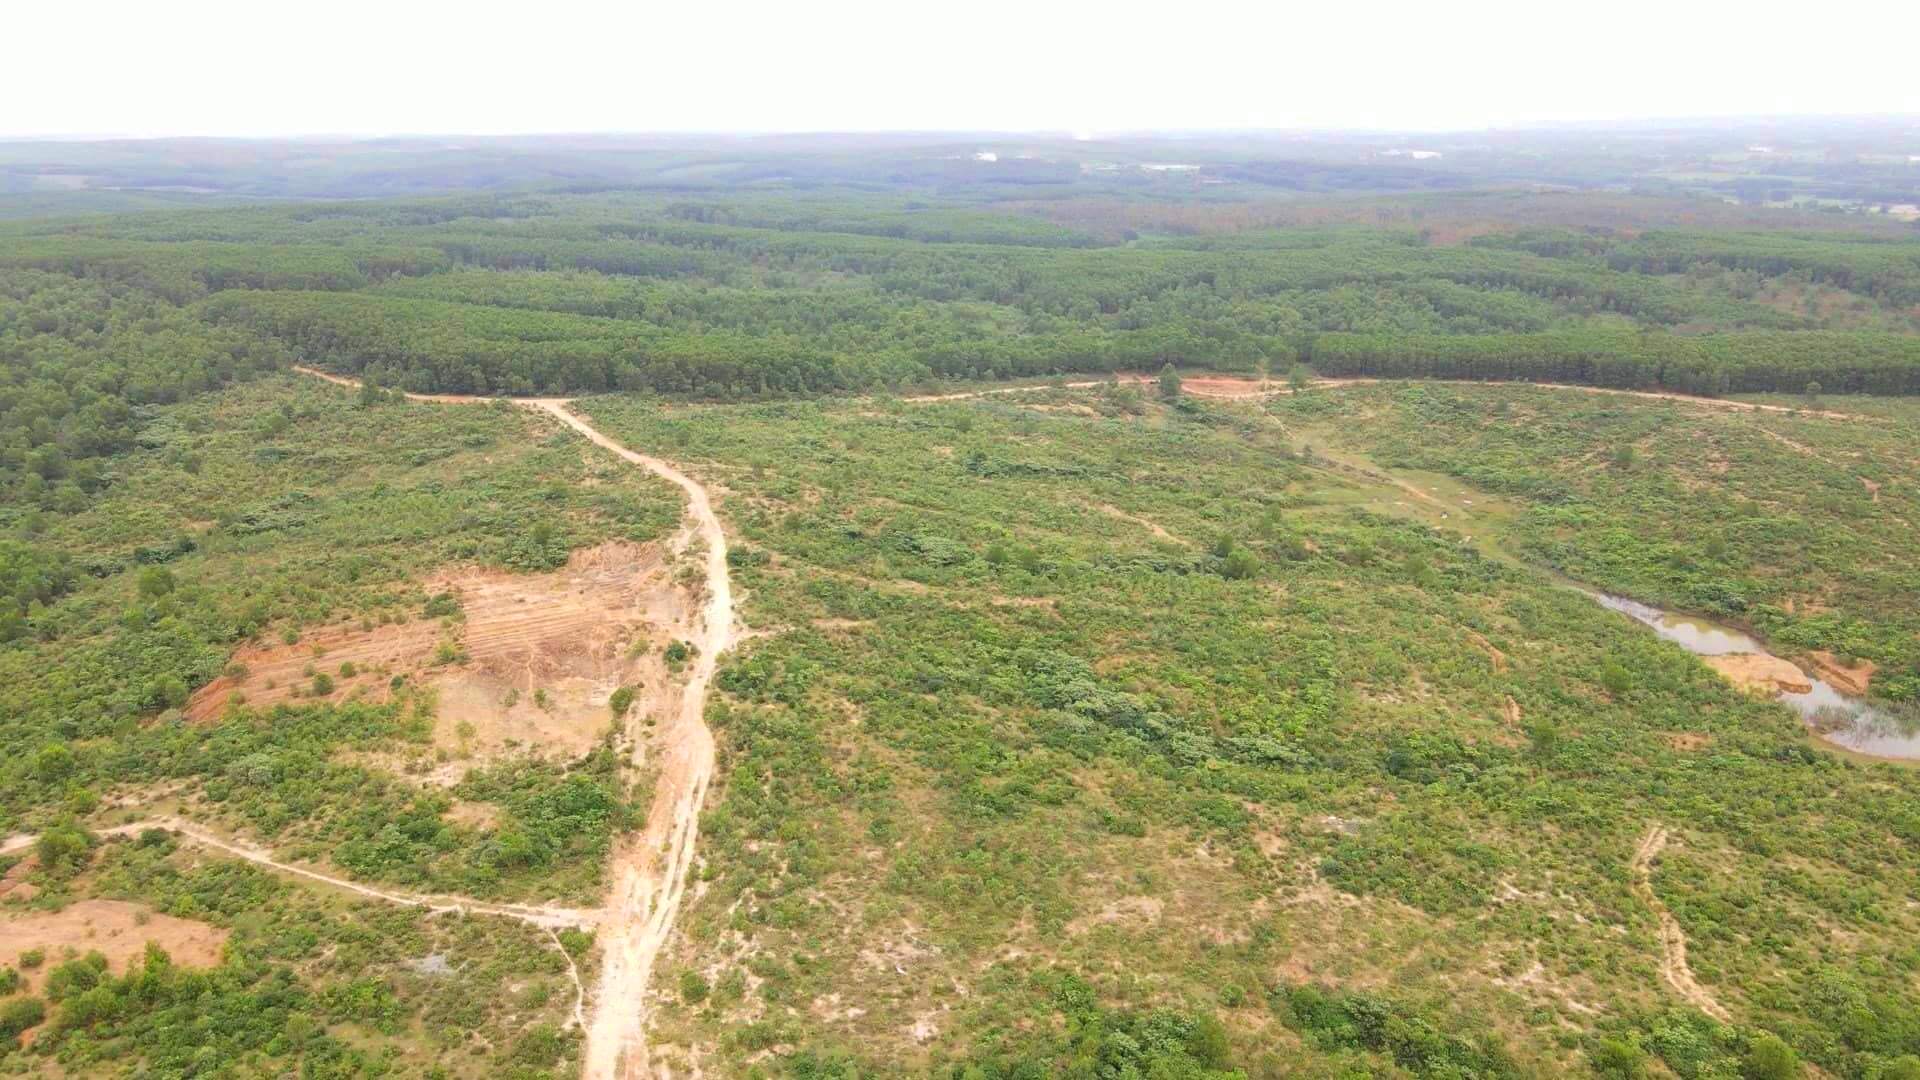 Dự án được thực hiện trên diện tích khoảng 200 ha tại tiểu khu 764 và 765 thuộc xã Cam Tuyền H.Cam Lộ, tỉnh Quảng Trị. Ảnh: L.T